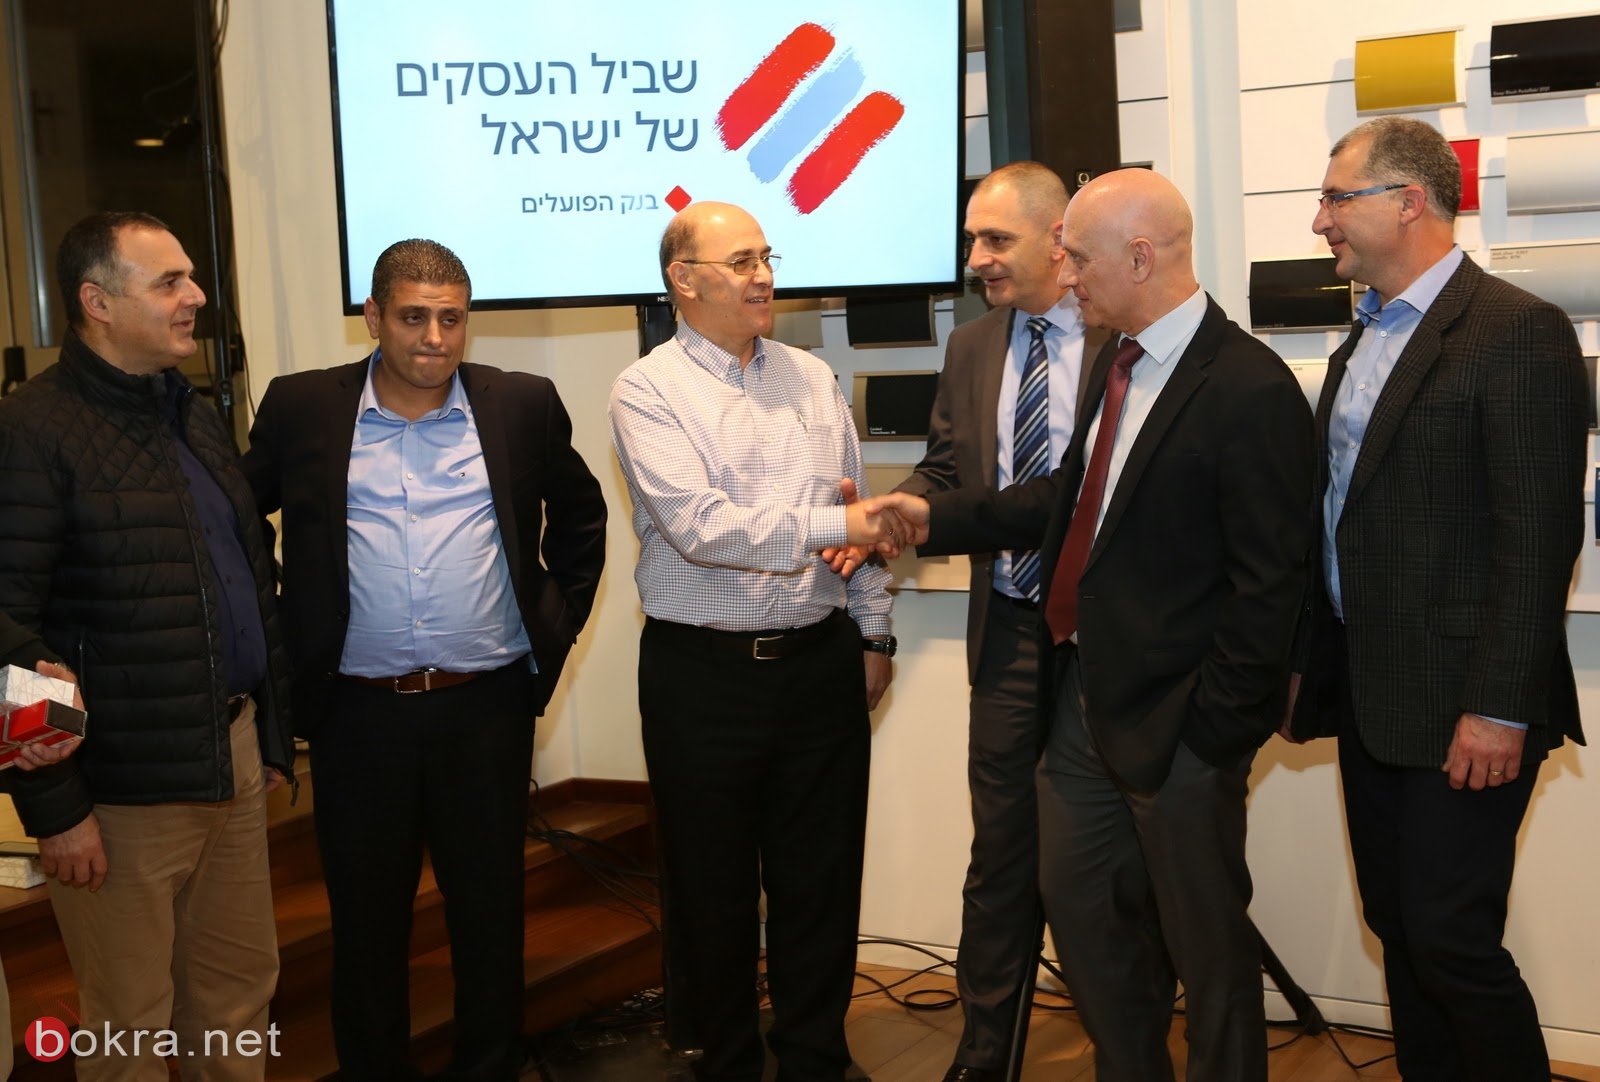 الناصرة: عشرات رجال الاعمال يشاركون في افتتاح برنامج برنامج بنك هبوعليم "مسار الأعمال في البلاد"-20